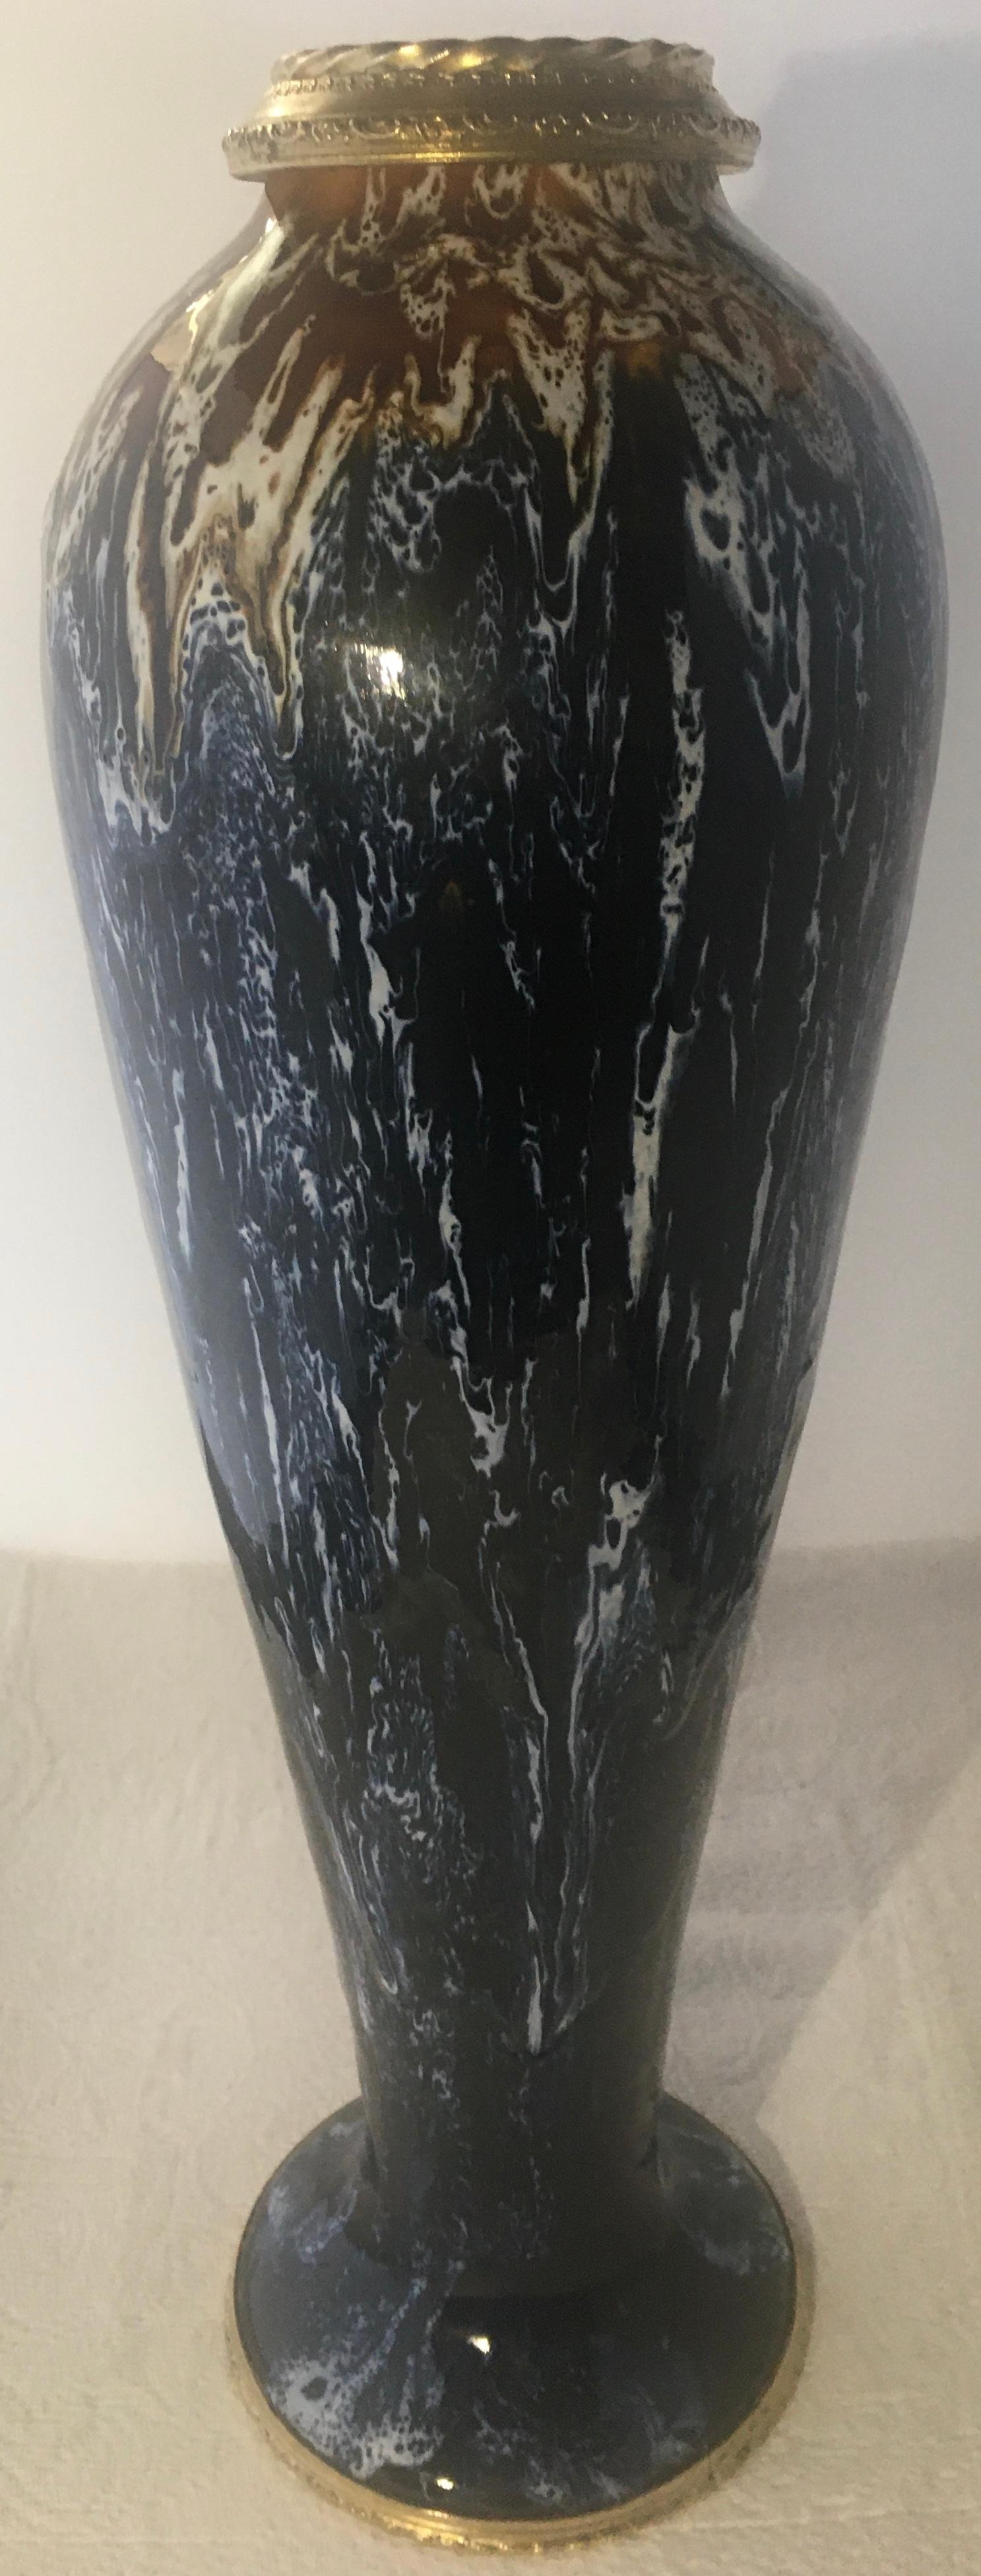 Superbe vase à fleurs en céramique émaillée de Charles Catteau, signé Boch La Louvière, avec de magnifiques tons bleus et beiges. Cette pièce date de la période Art déco, Belgique, vers 1920.

Au moment de la Révolution belge de 1830 et de la